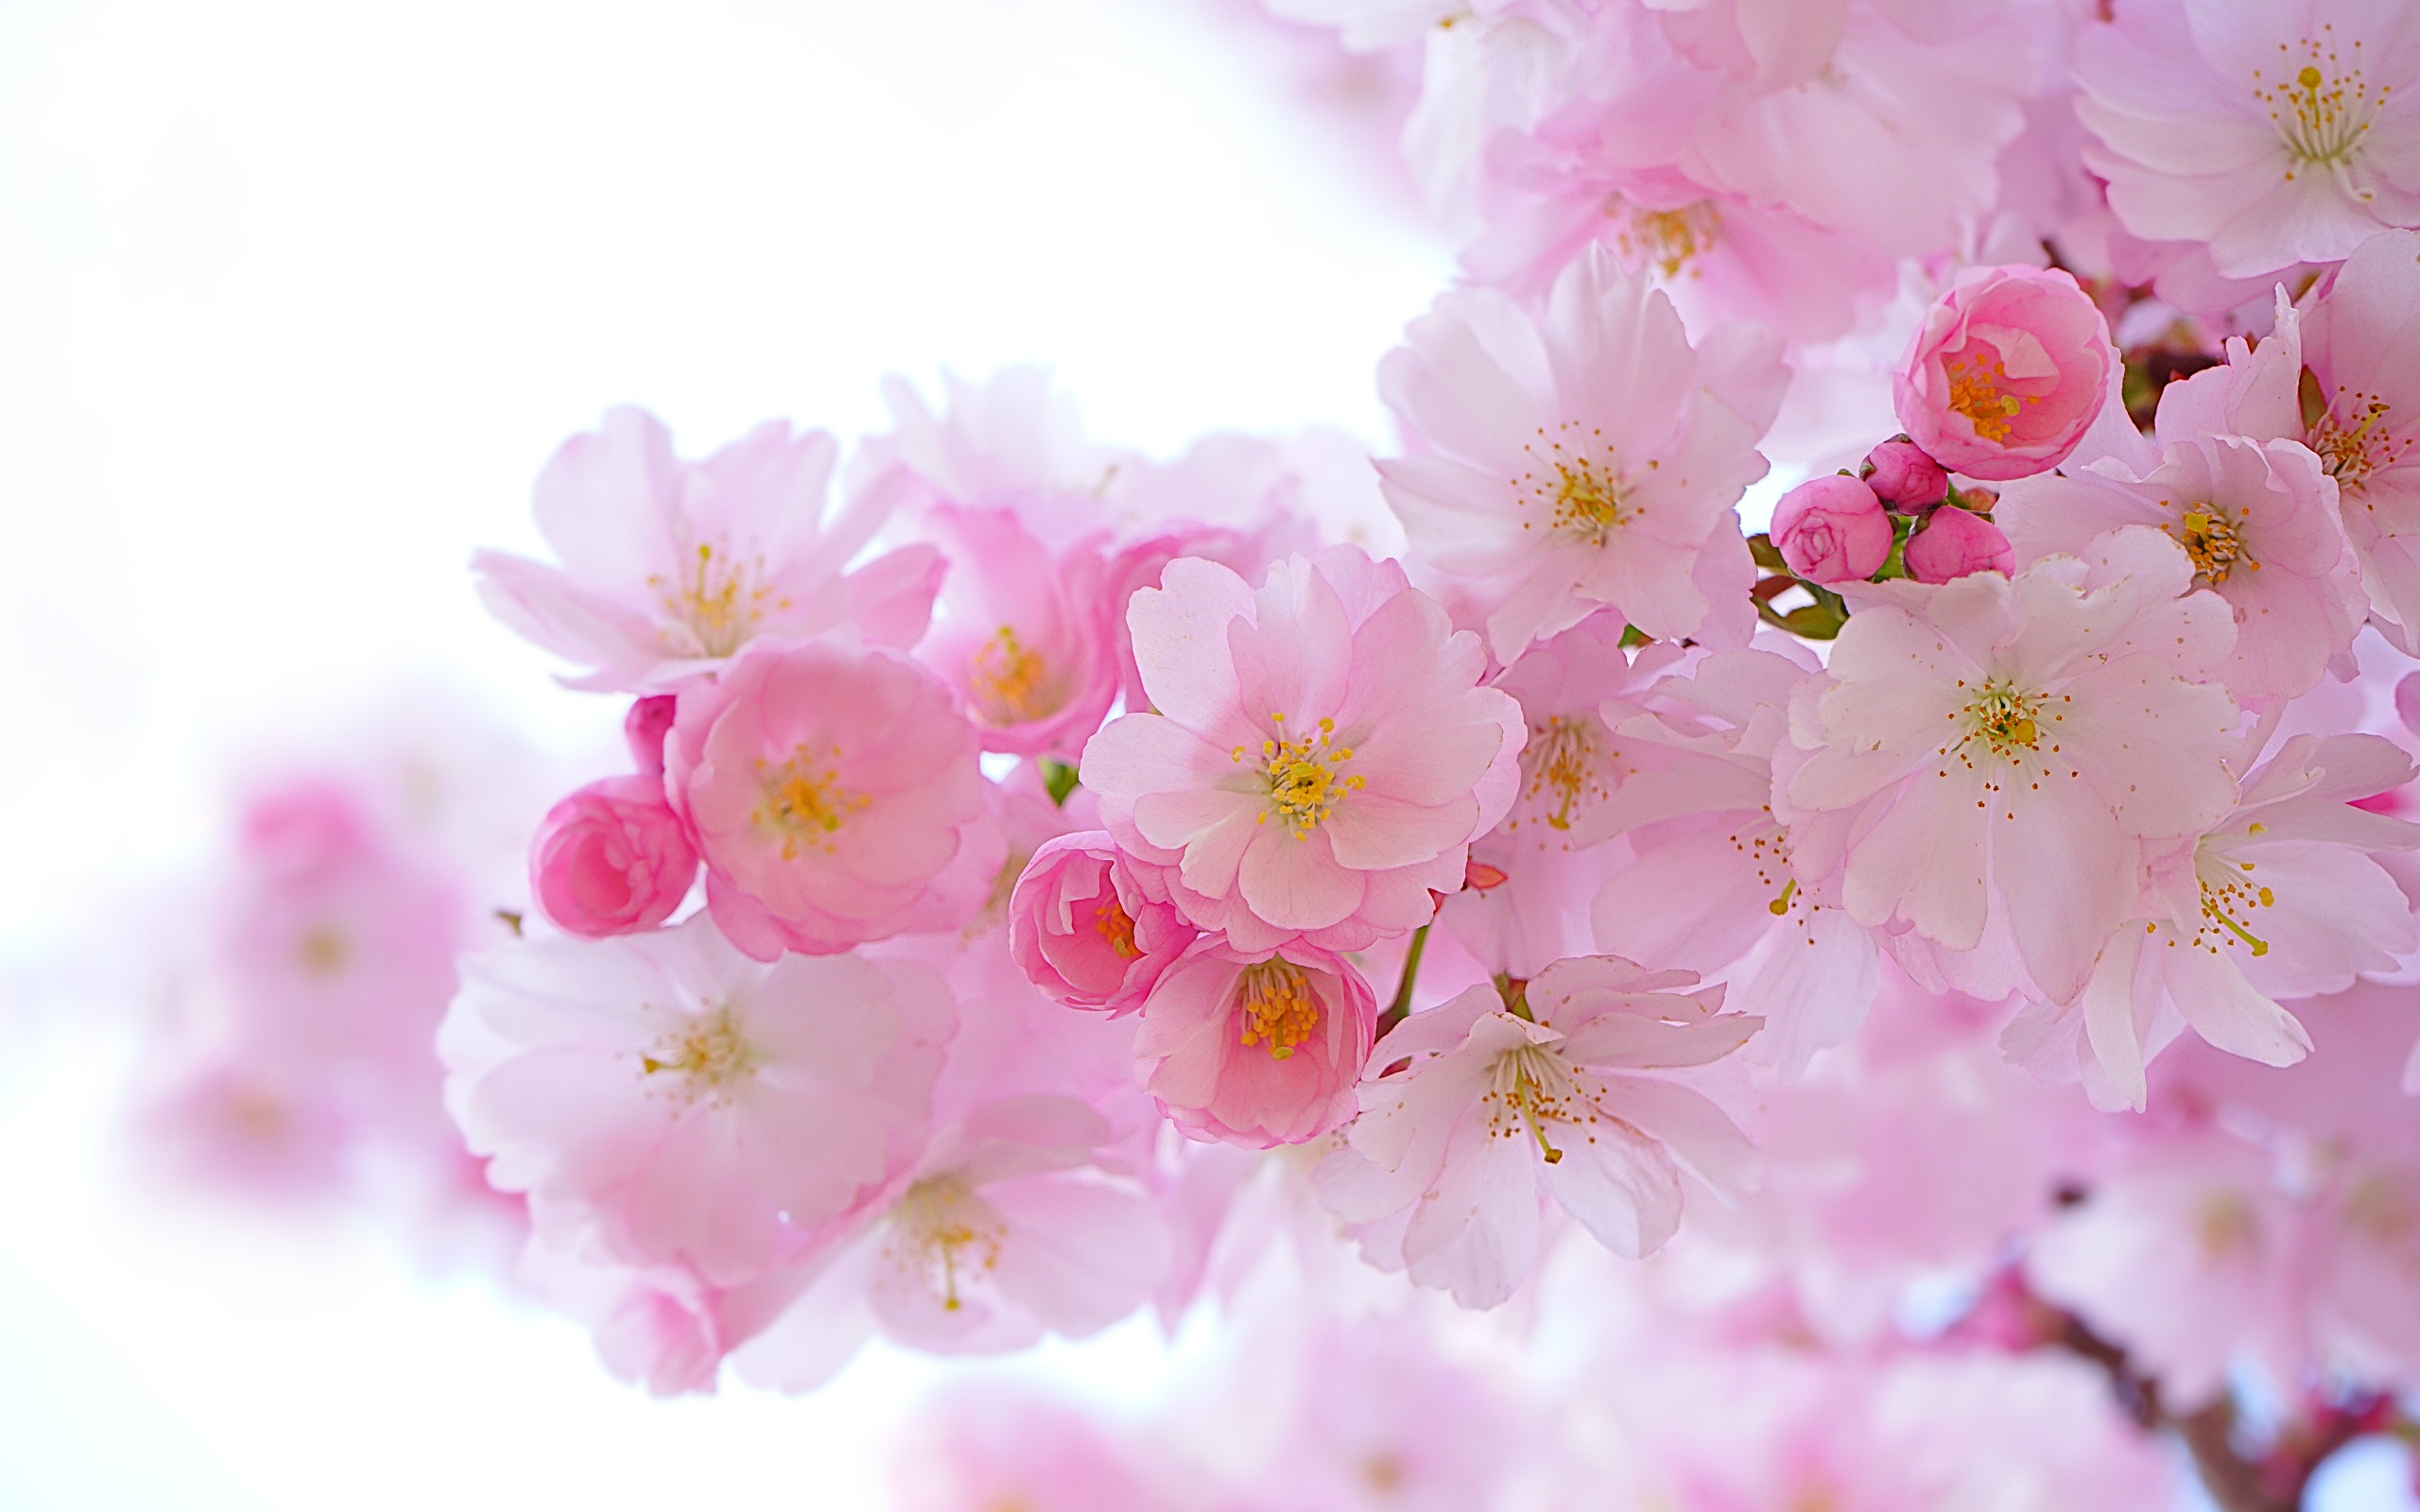 Nature Hans Braxmeier Cherry Blossom Flowers 2560x1600